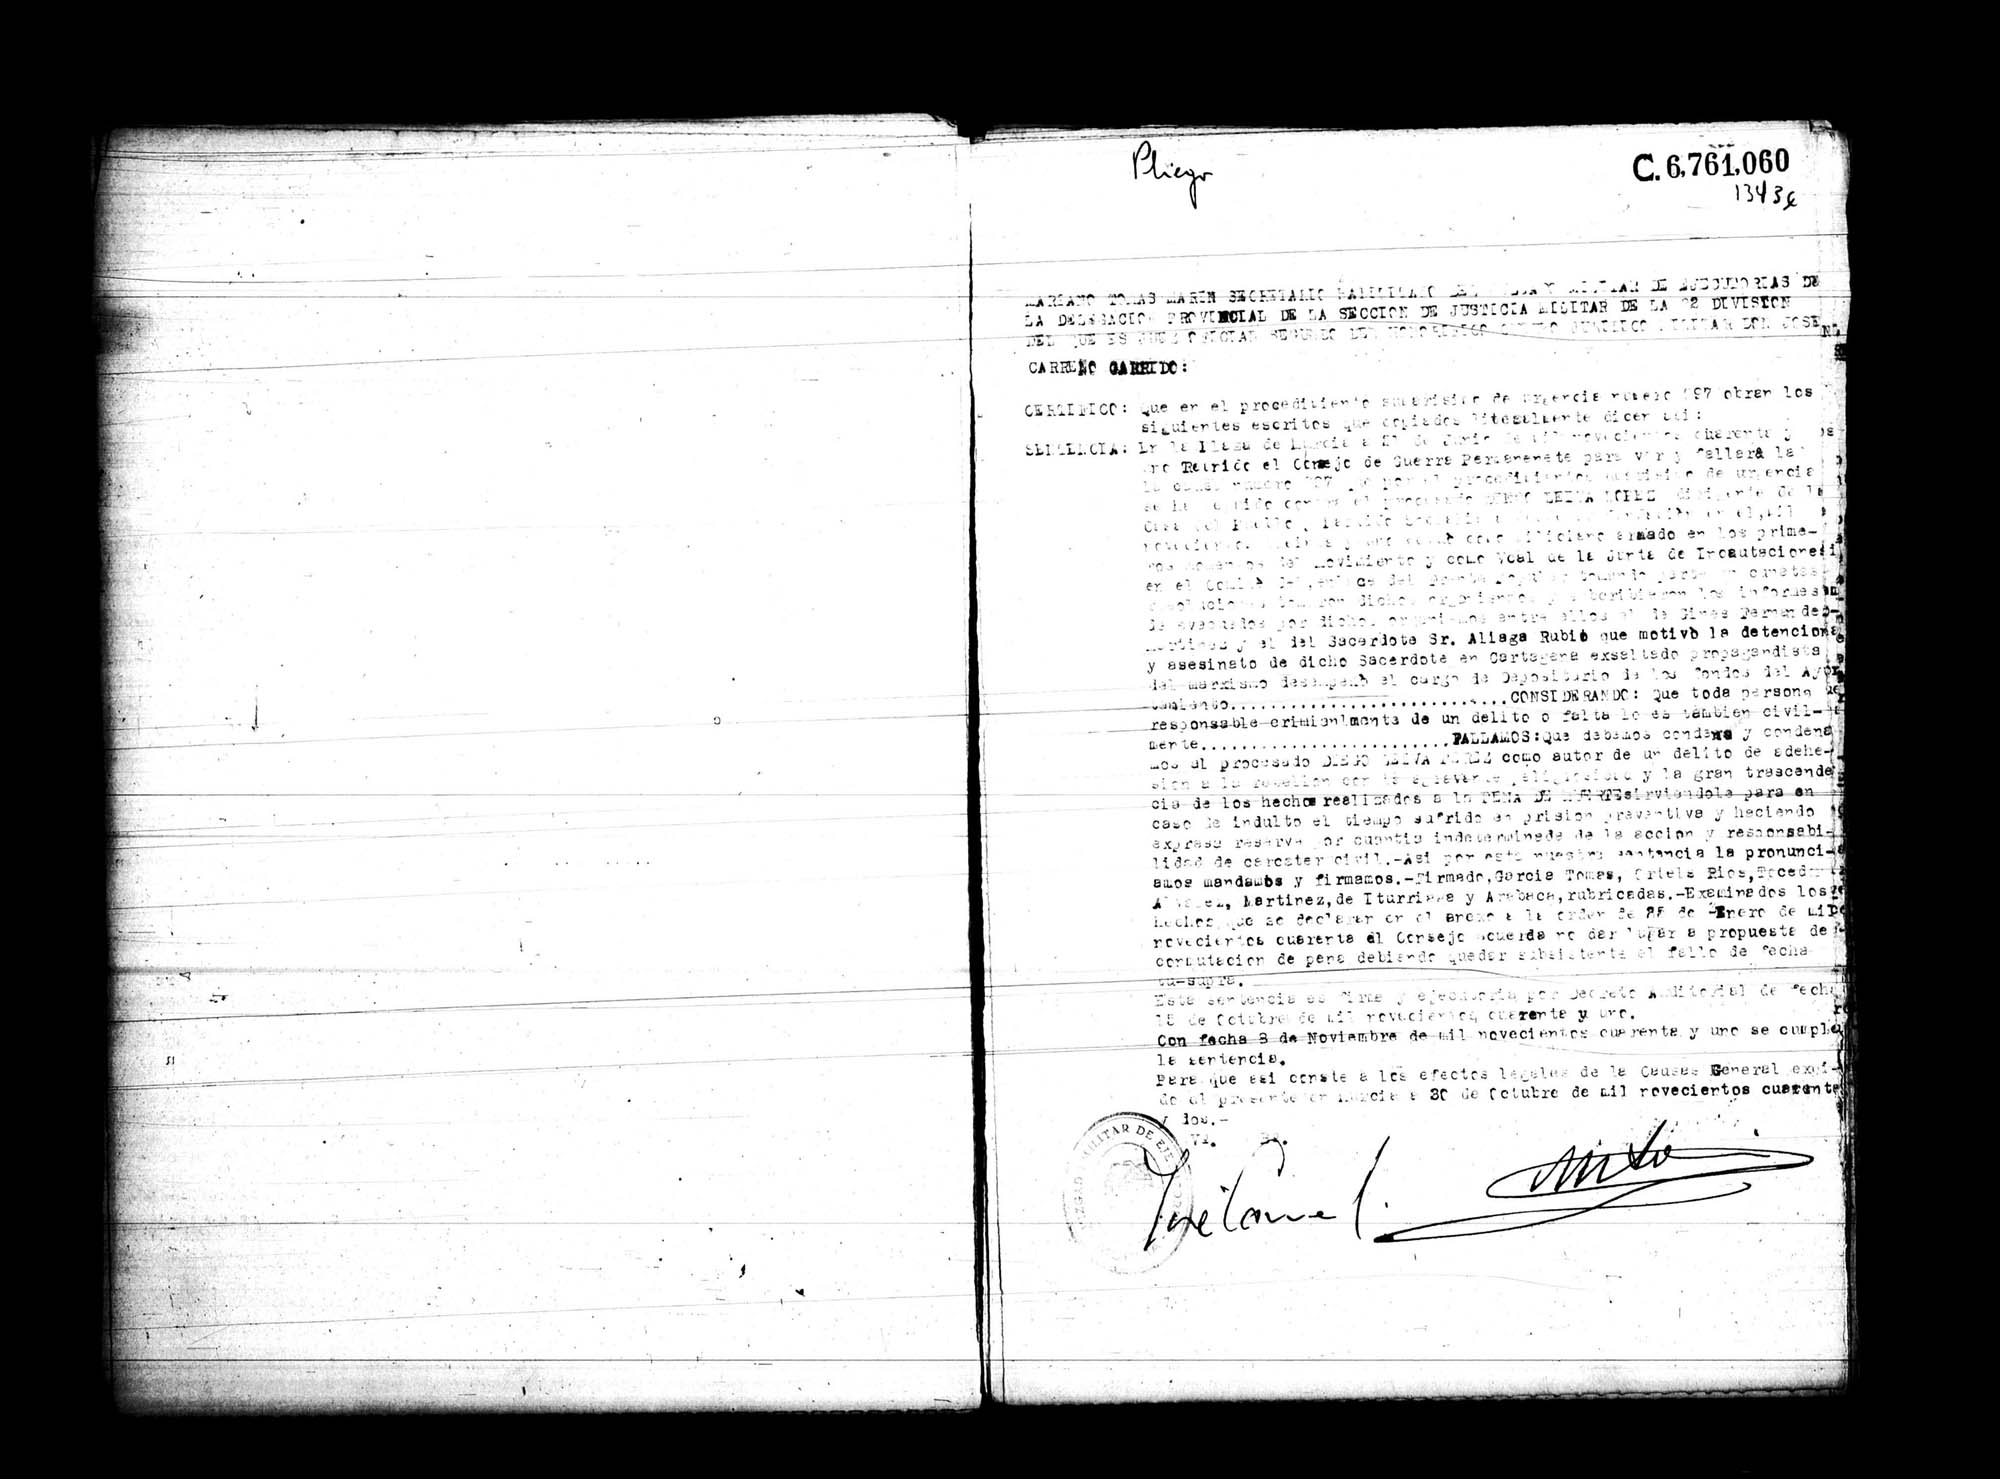 Certificado de la sentencia pronunciada contra Diego Leiva López, causa 997, el 21 de junio de 1941 en Murcia.